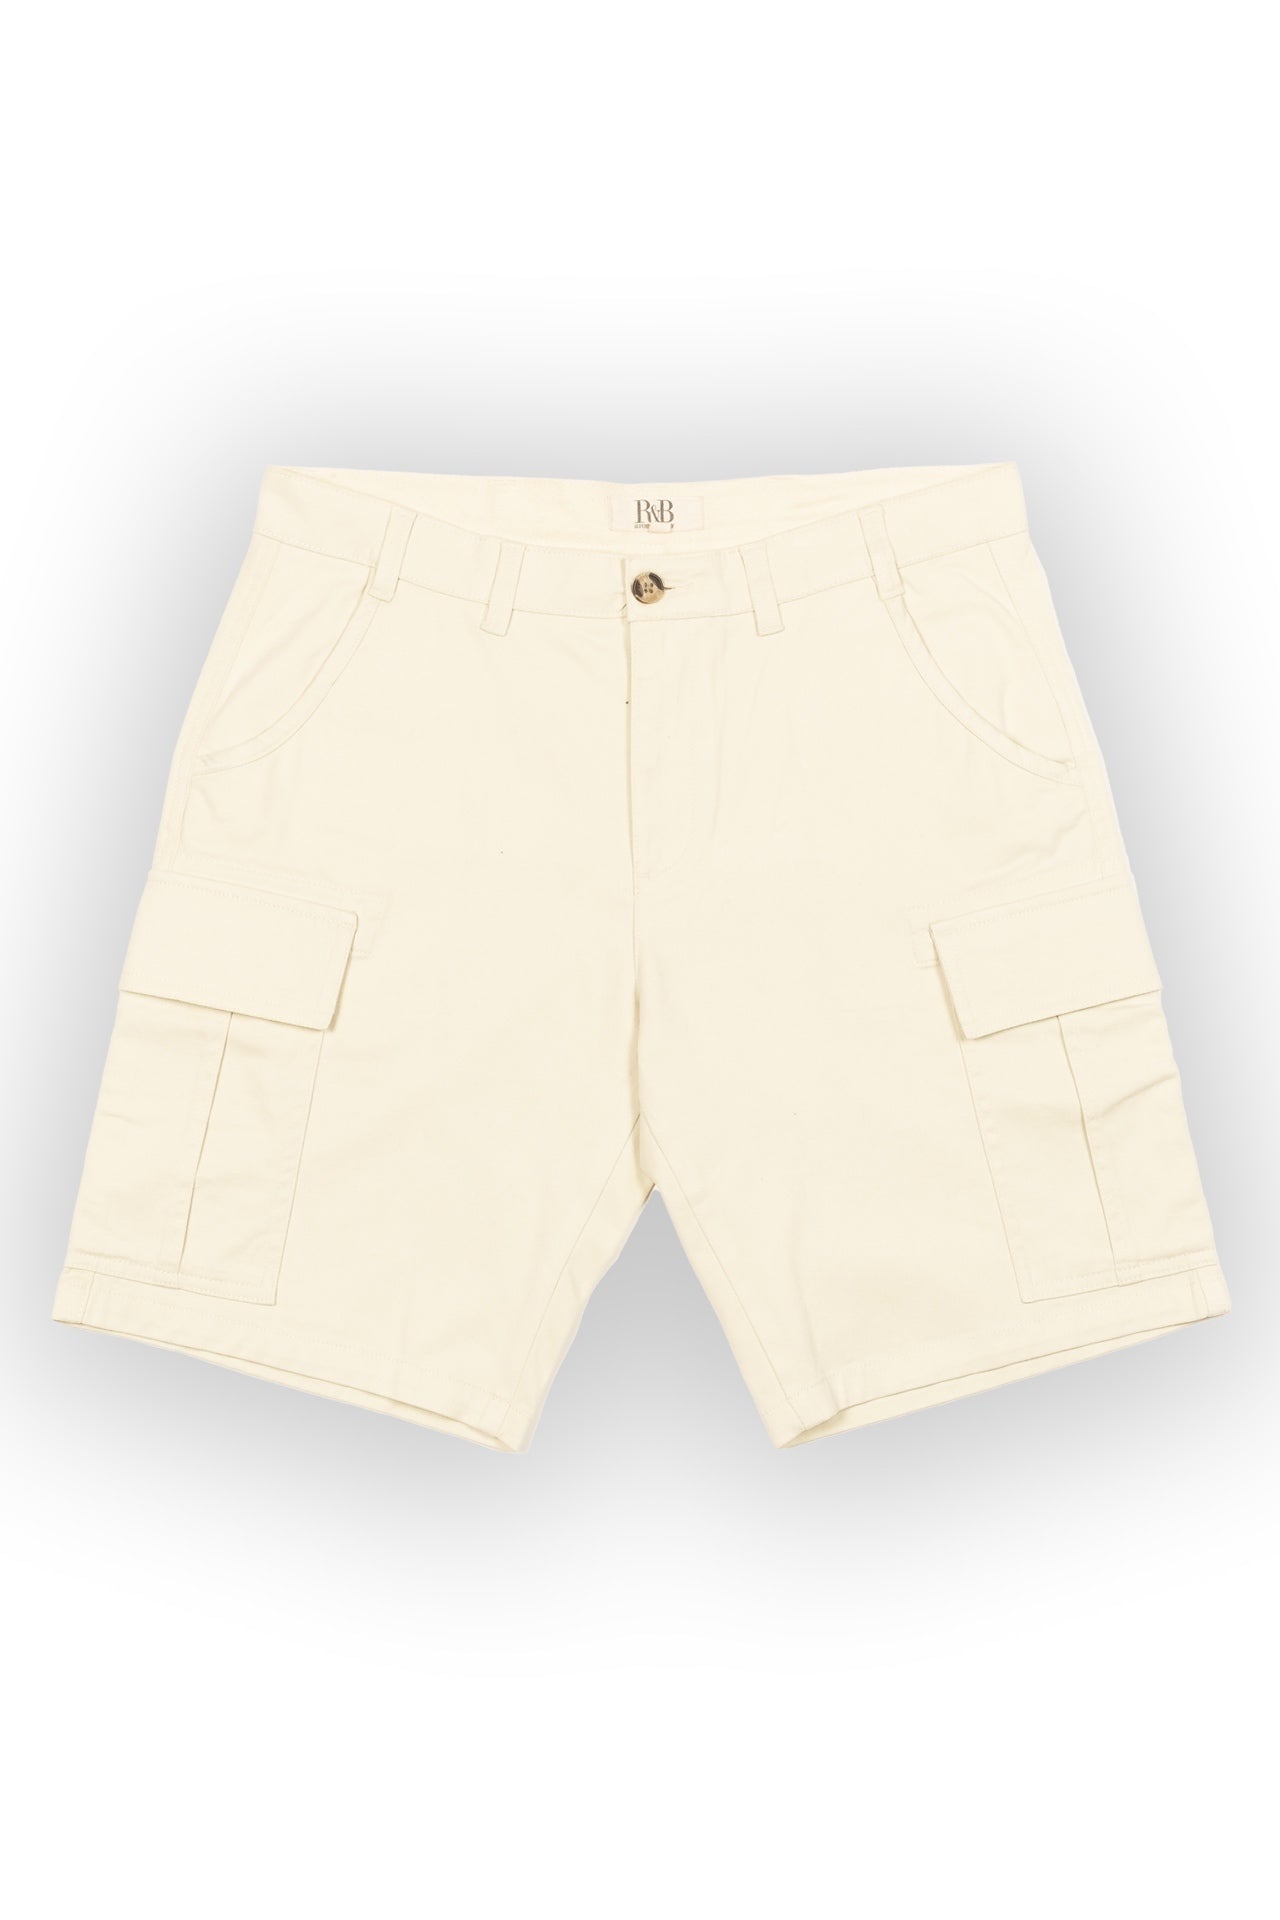 Parker Ecru Cargo Shorts - Rupert and Buckley - Shorts